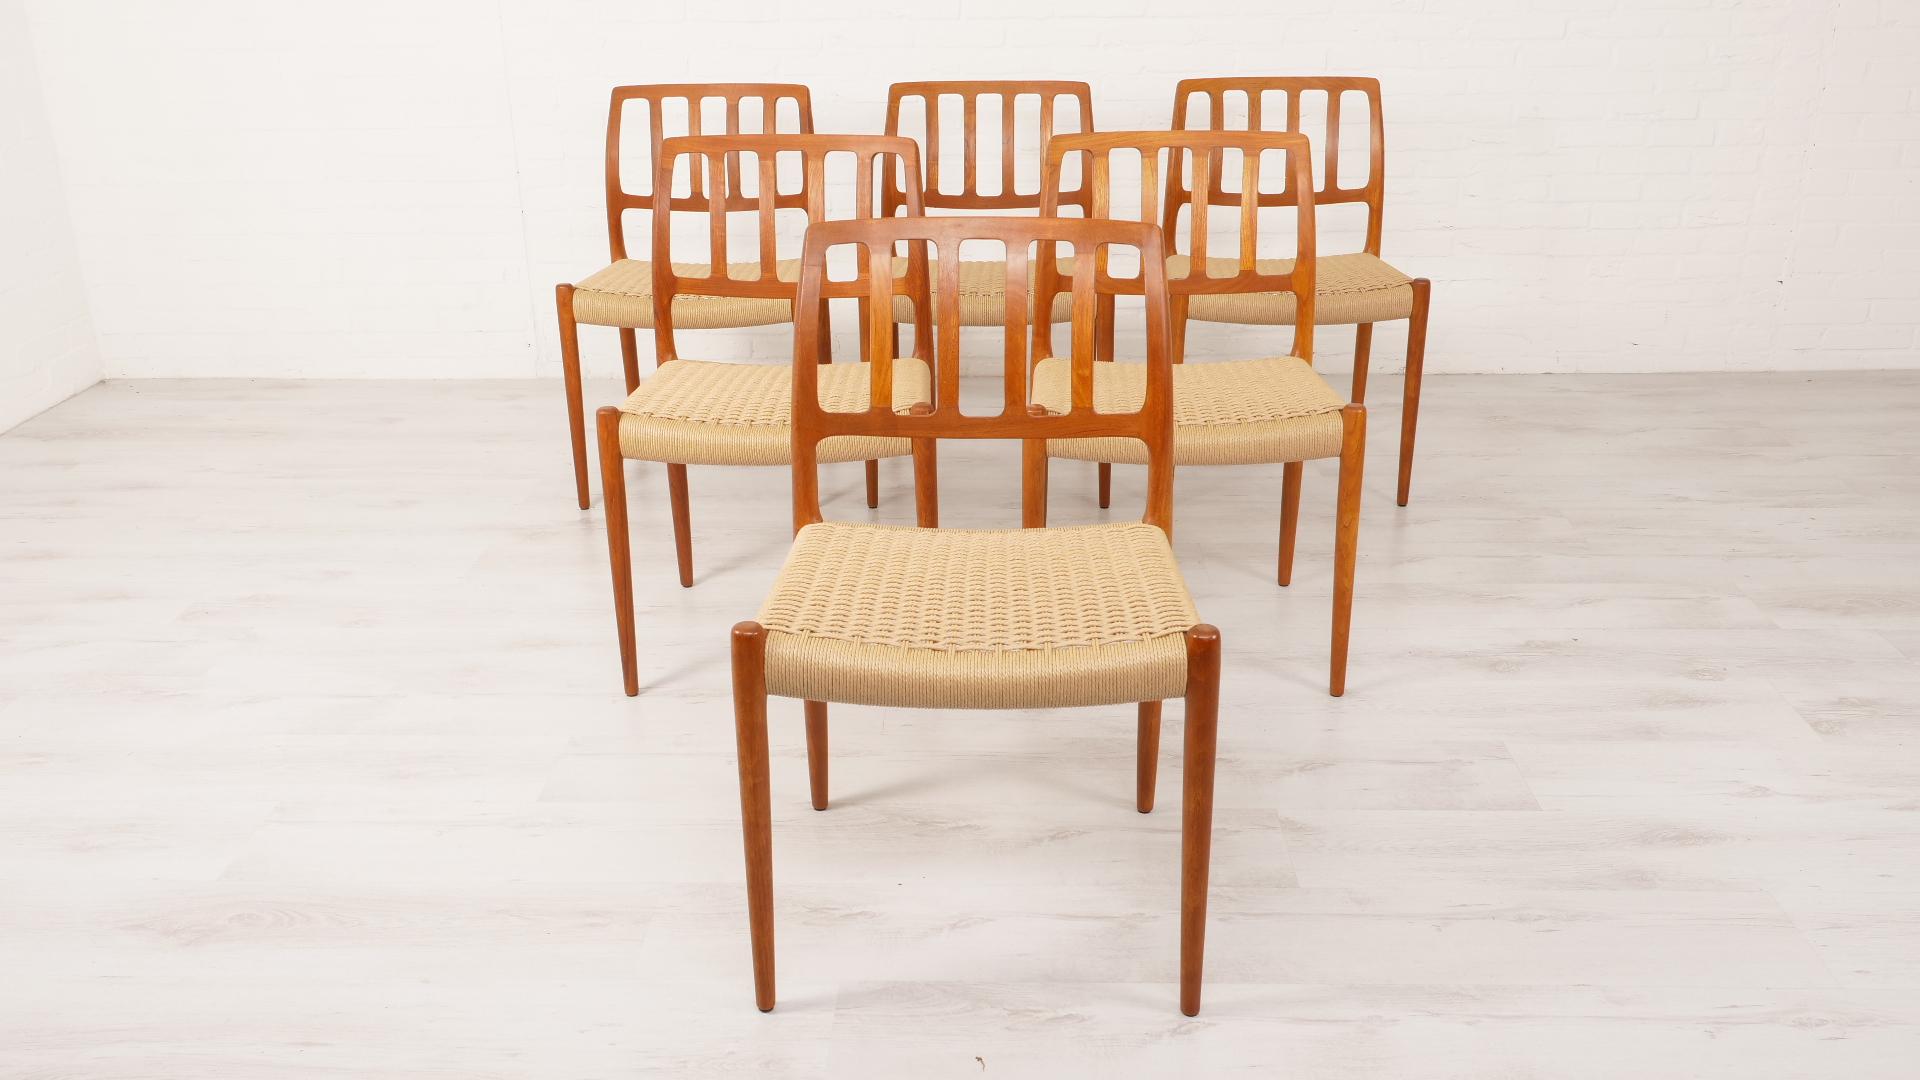 Satz von 6 schönen und seltenen dänischen Vintage-Esszimmerstühlen. Diese Stühle wurden von Niels Otto Møller entworfen. Die Stühle sind aus Teakholz gefertigt und mit neuen Papierkordeln ausgestattet.

Zeitraum des Designs: 1950 - 1960
Stil: